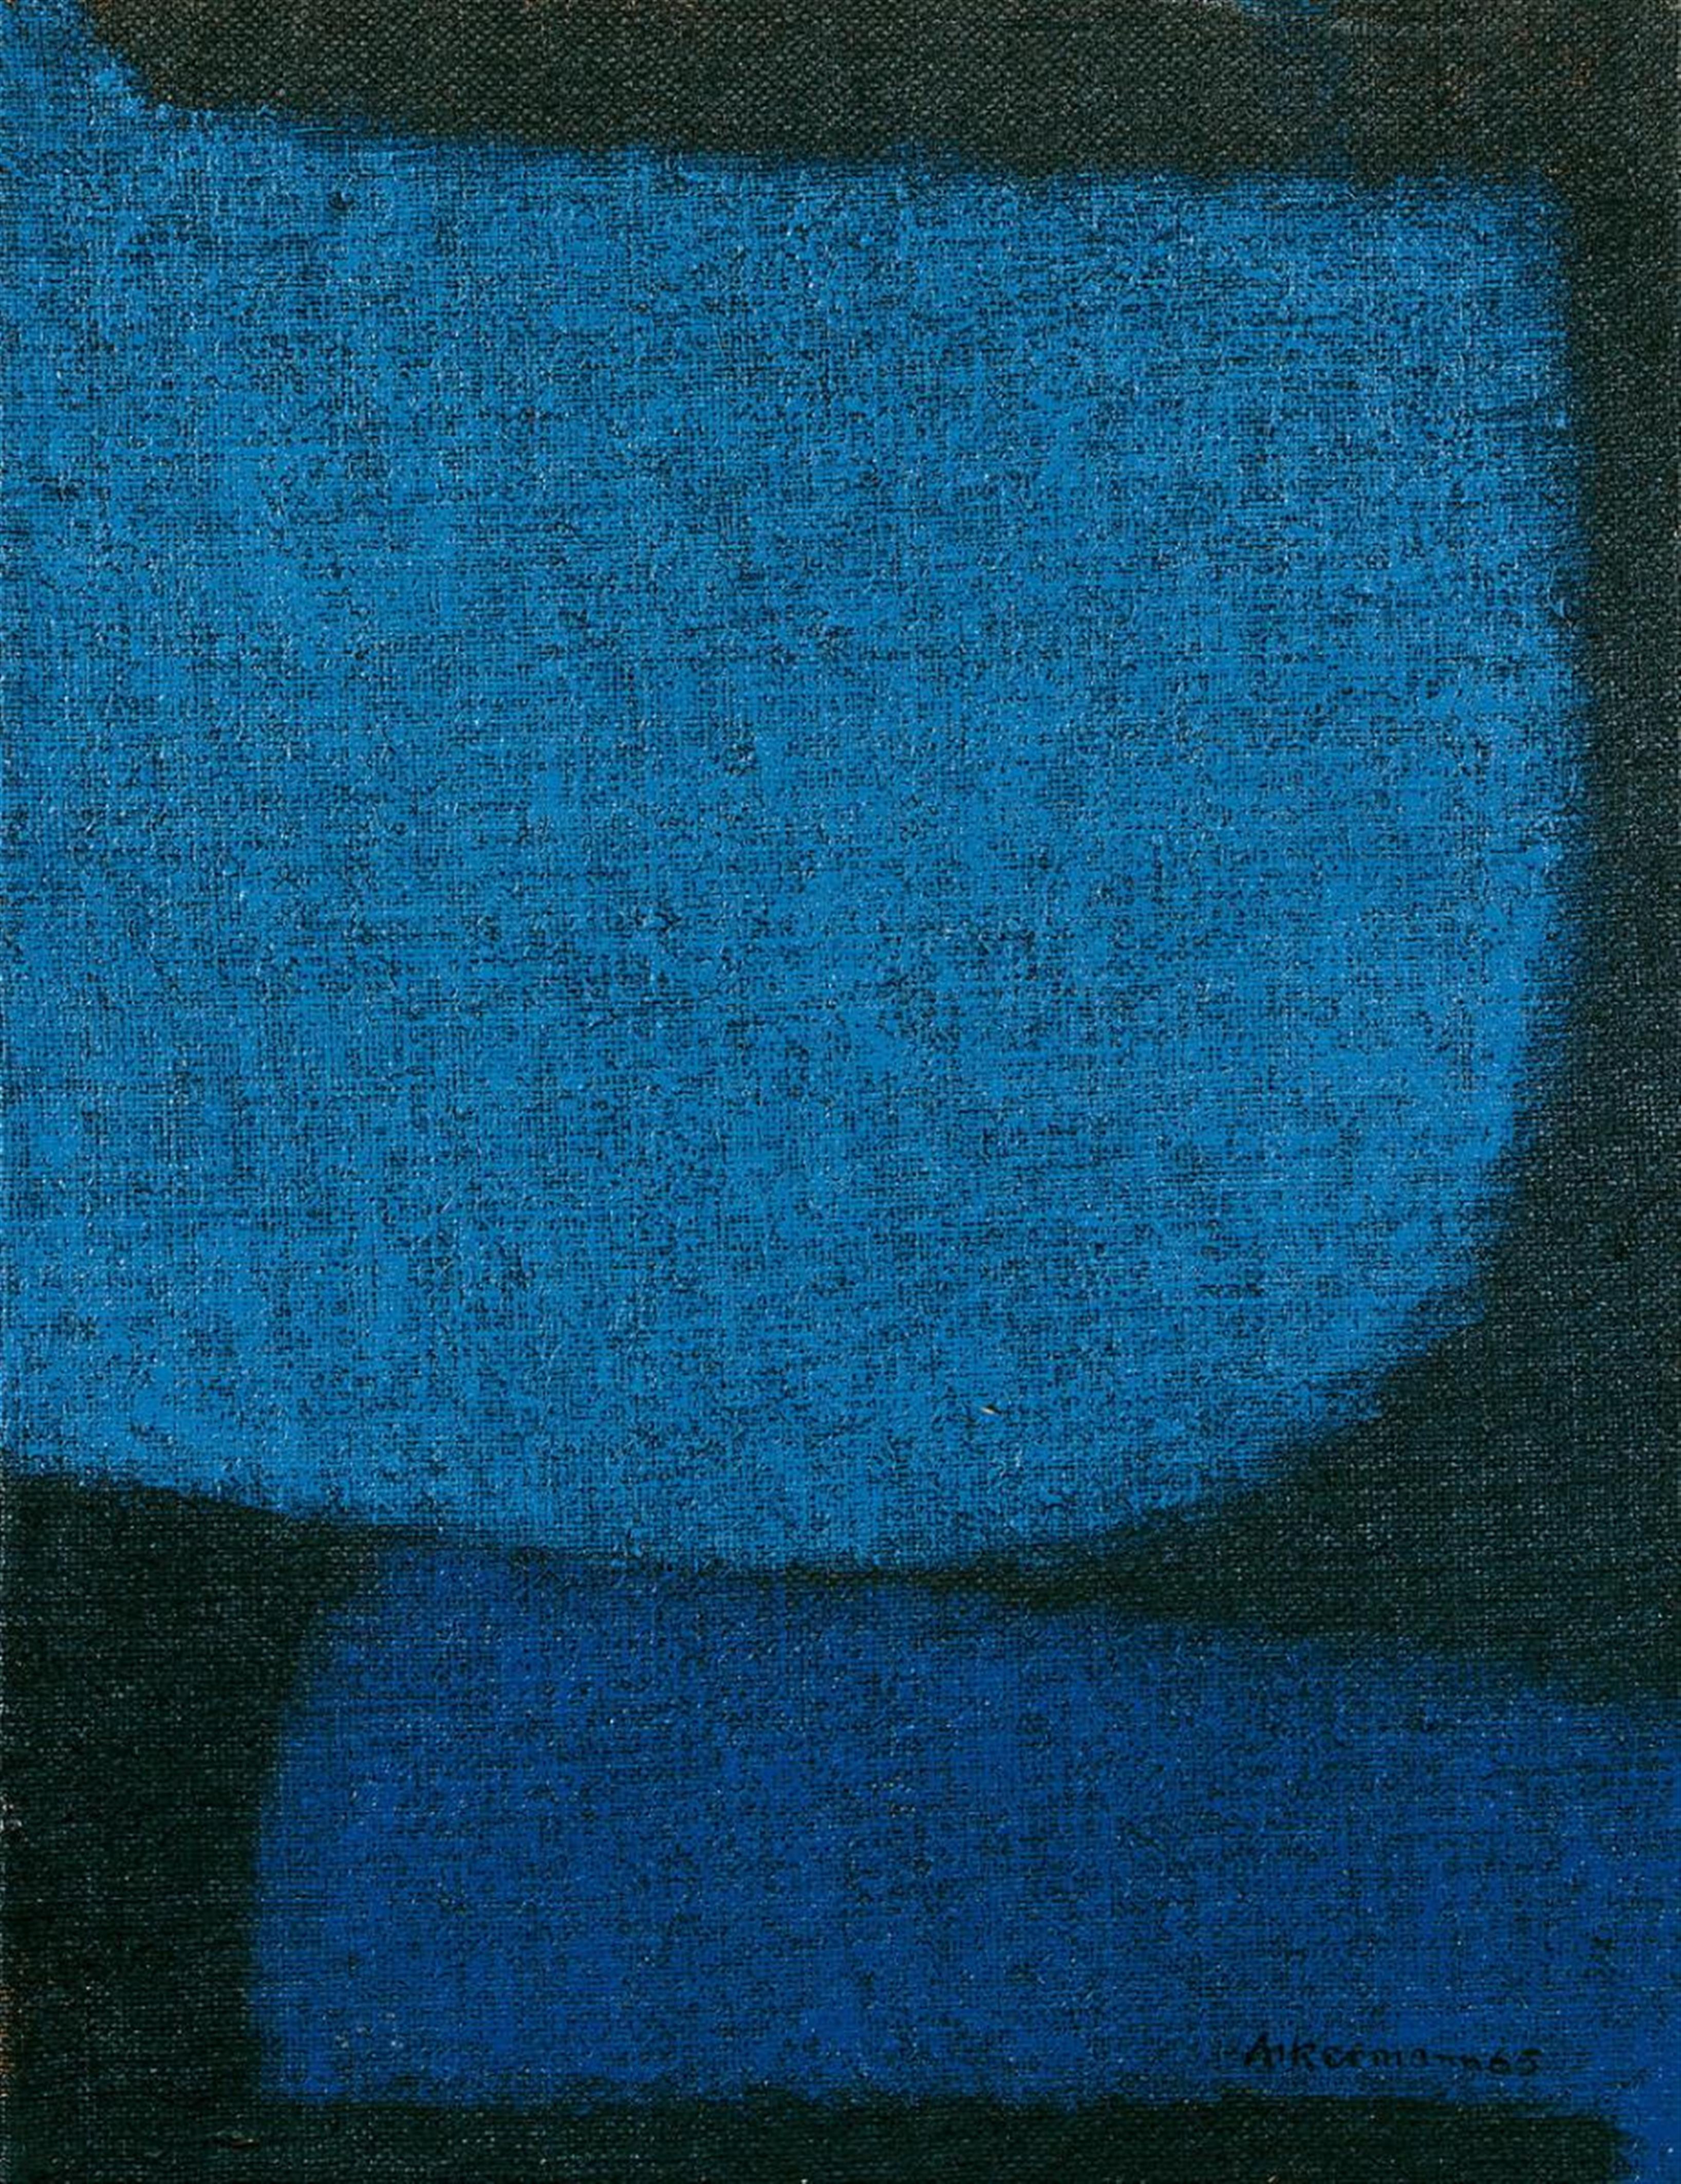 Max Ackermann - Komposition in Blau und Schwarz